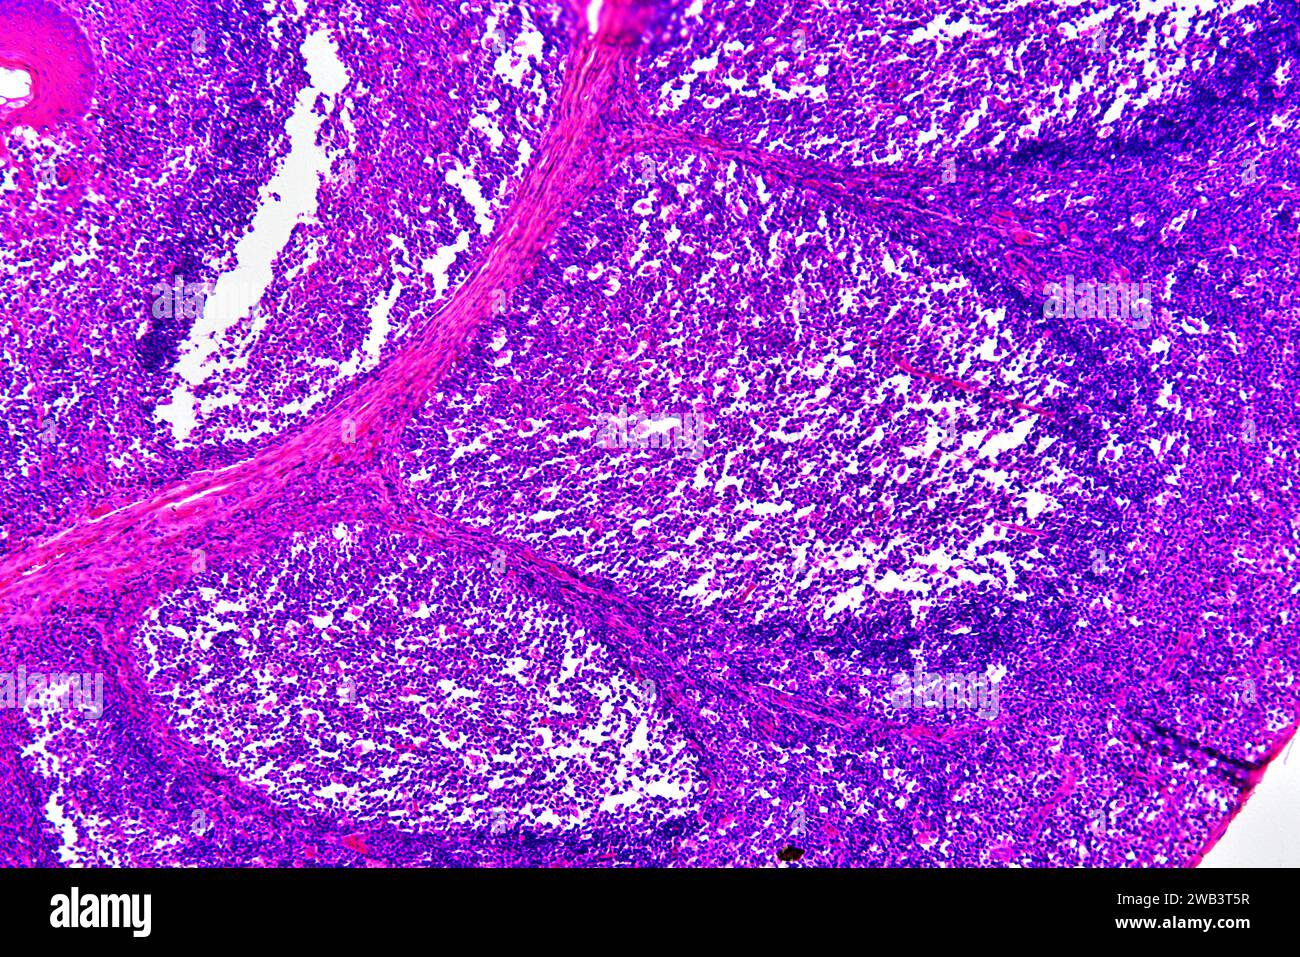 Sección de amígdalas palatinas humanas que muestra folículos linfoides circulares y glándula secretora. Micrografía de luz, tinción de eosina hematoxilina. X75 cuando se imprime 10 Foto de stock